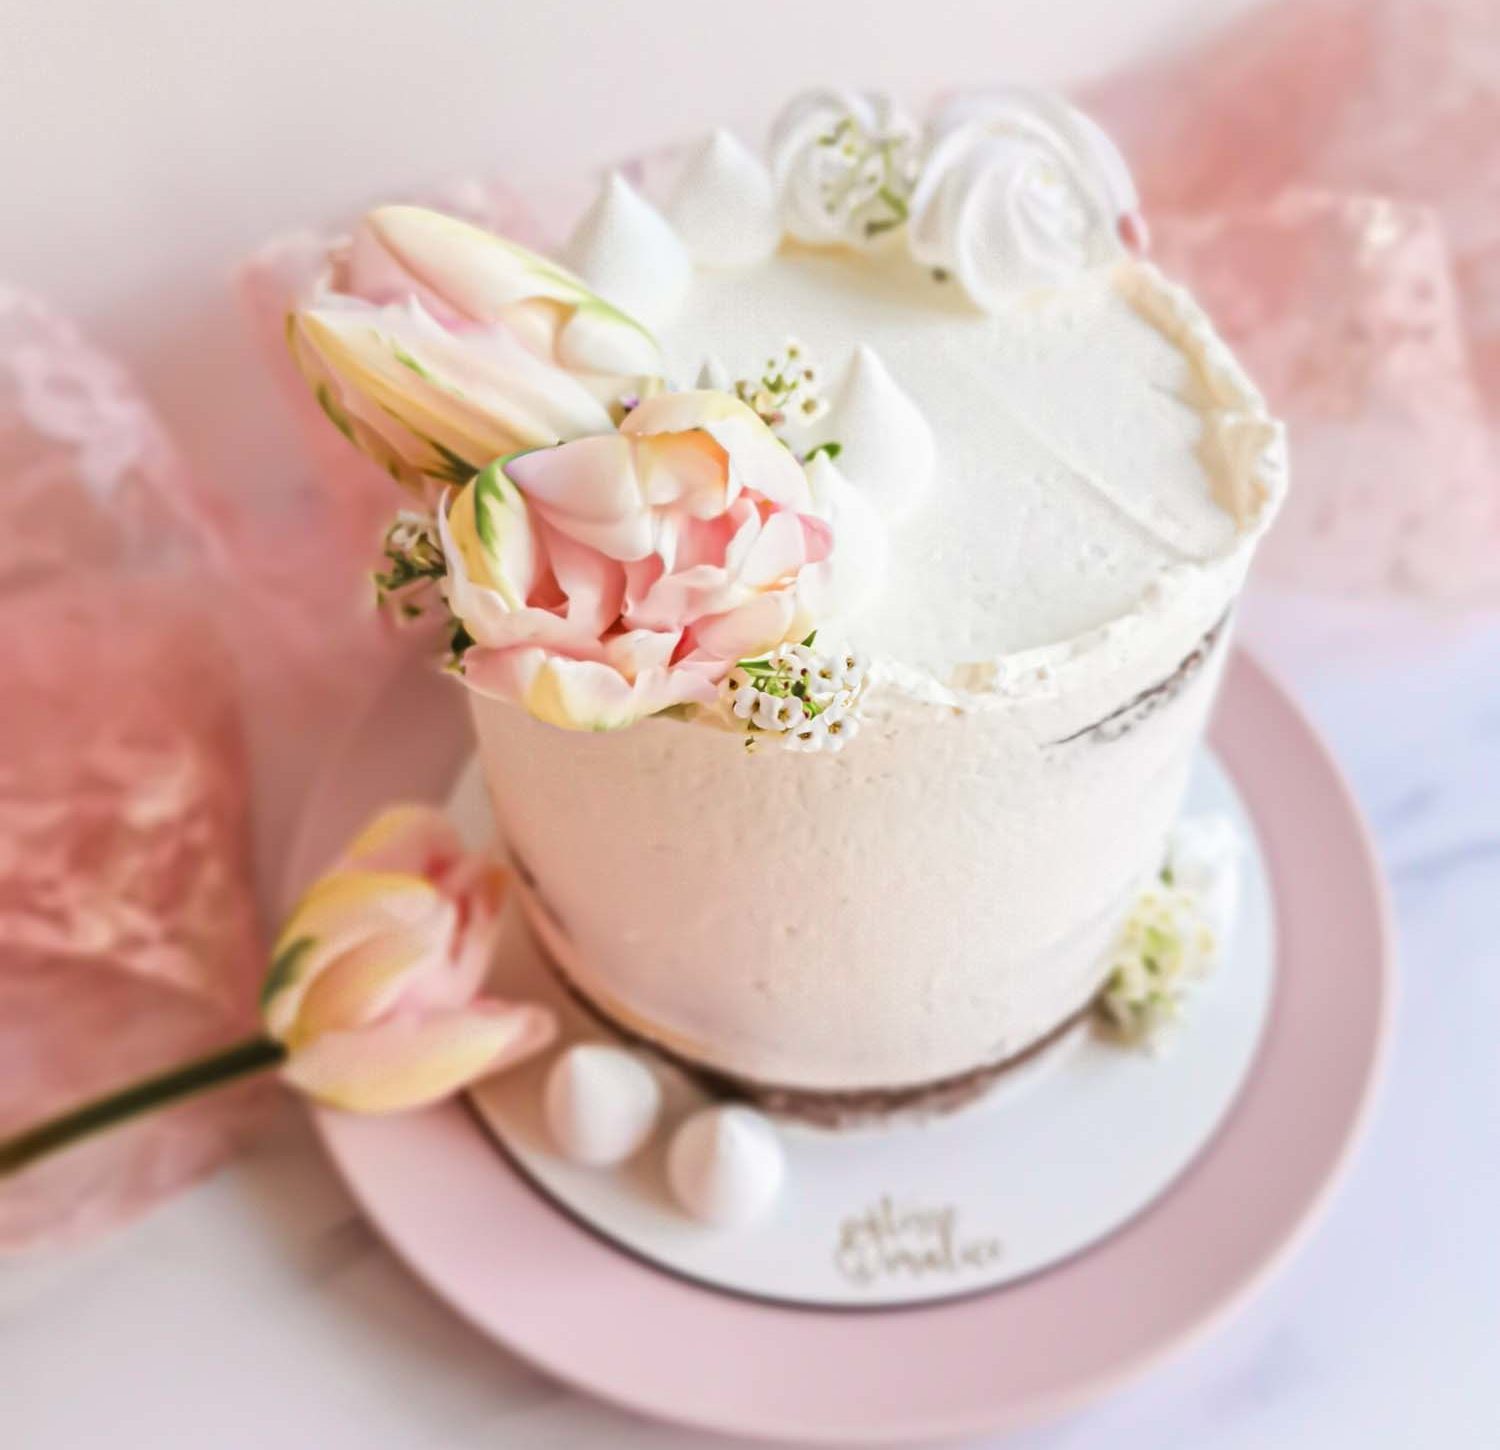 Comment réaliser des fleurs en sucre pour décorer un gâteau ? - Elle à Table